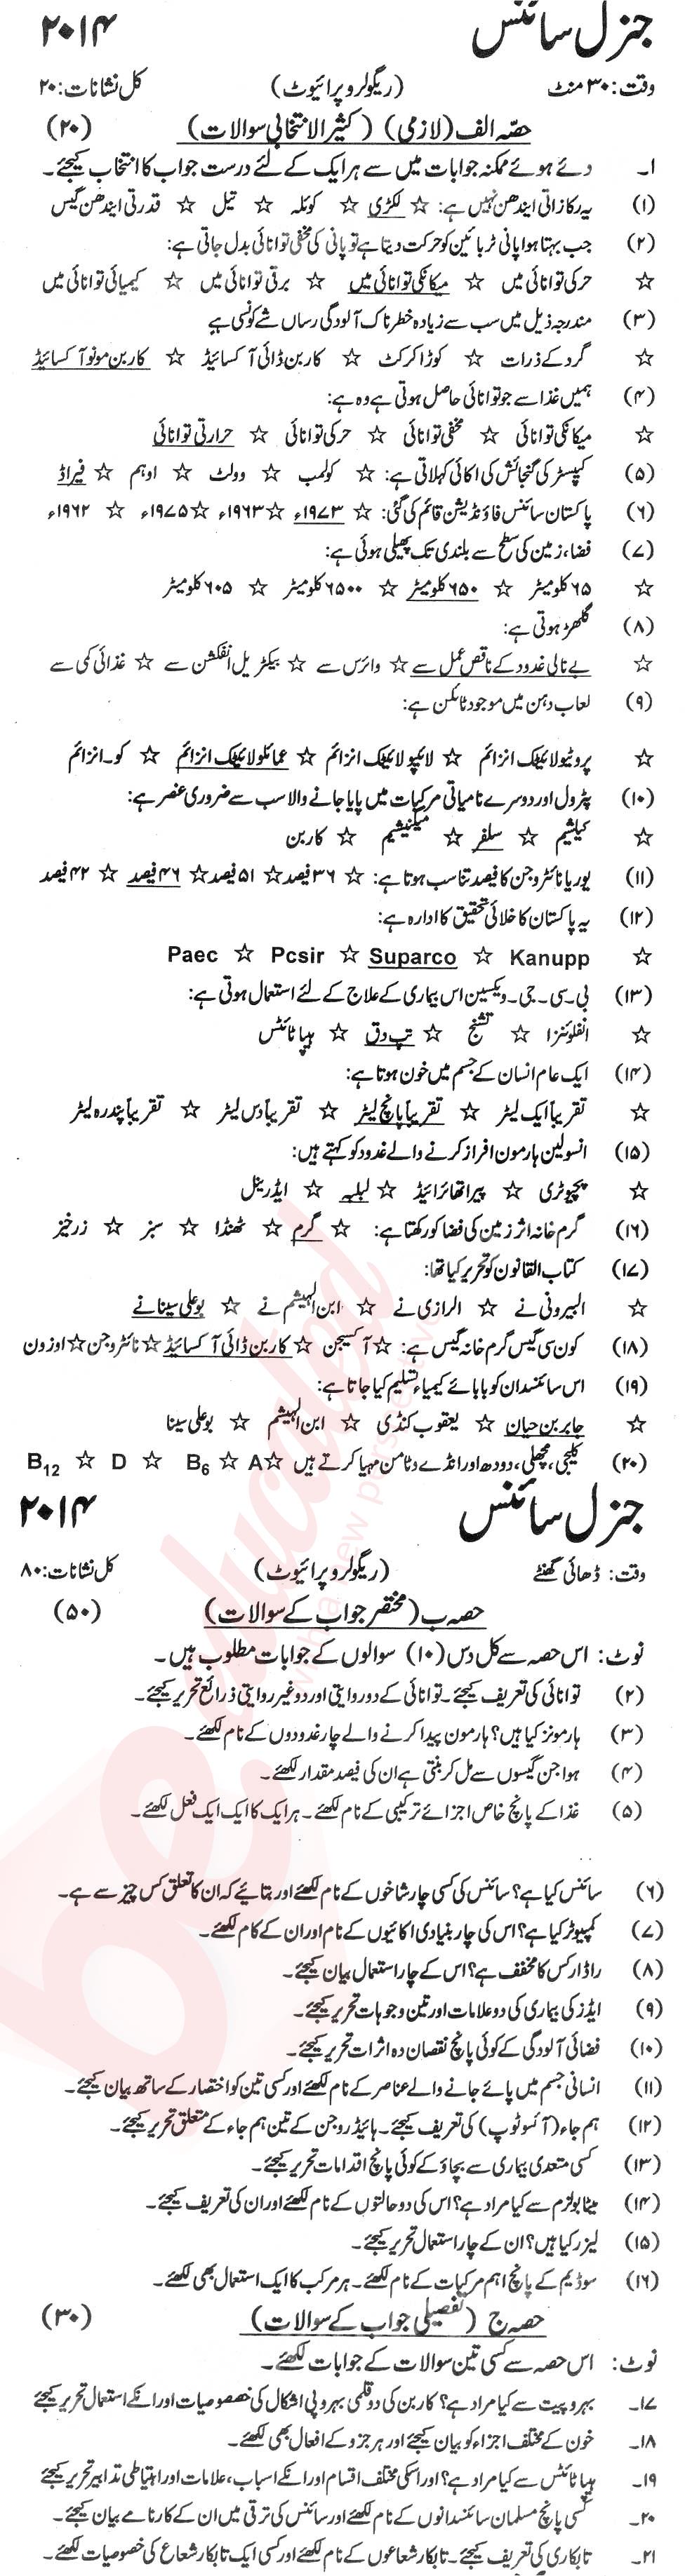 General Science 9th Urdu Medium Past Paper Group 1 KPBTE 2014